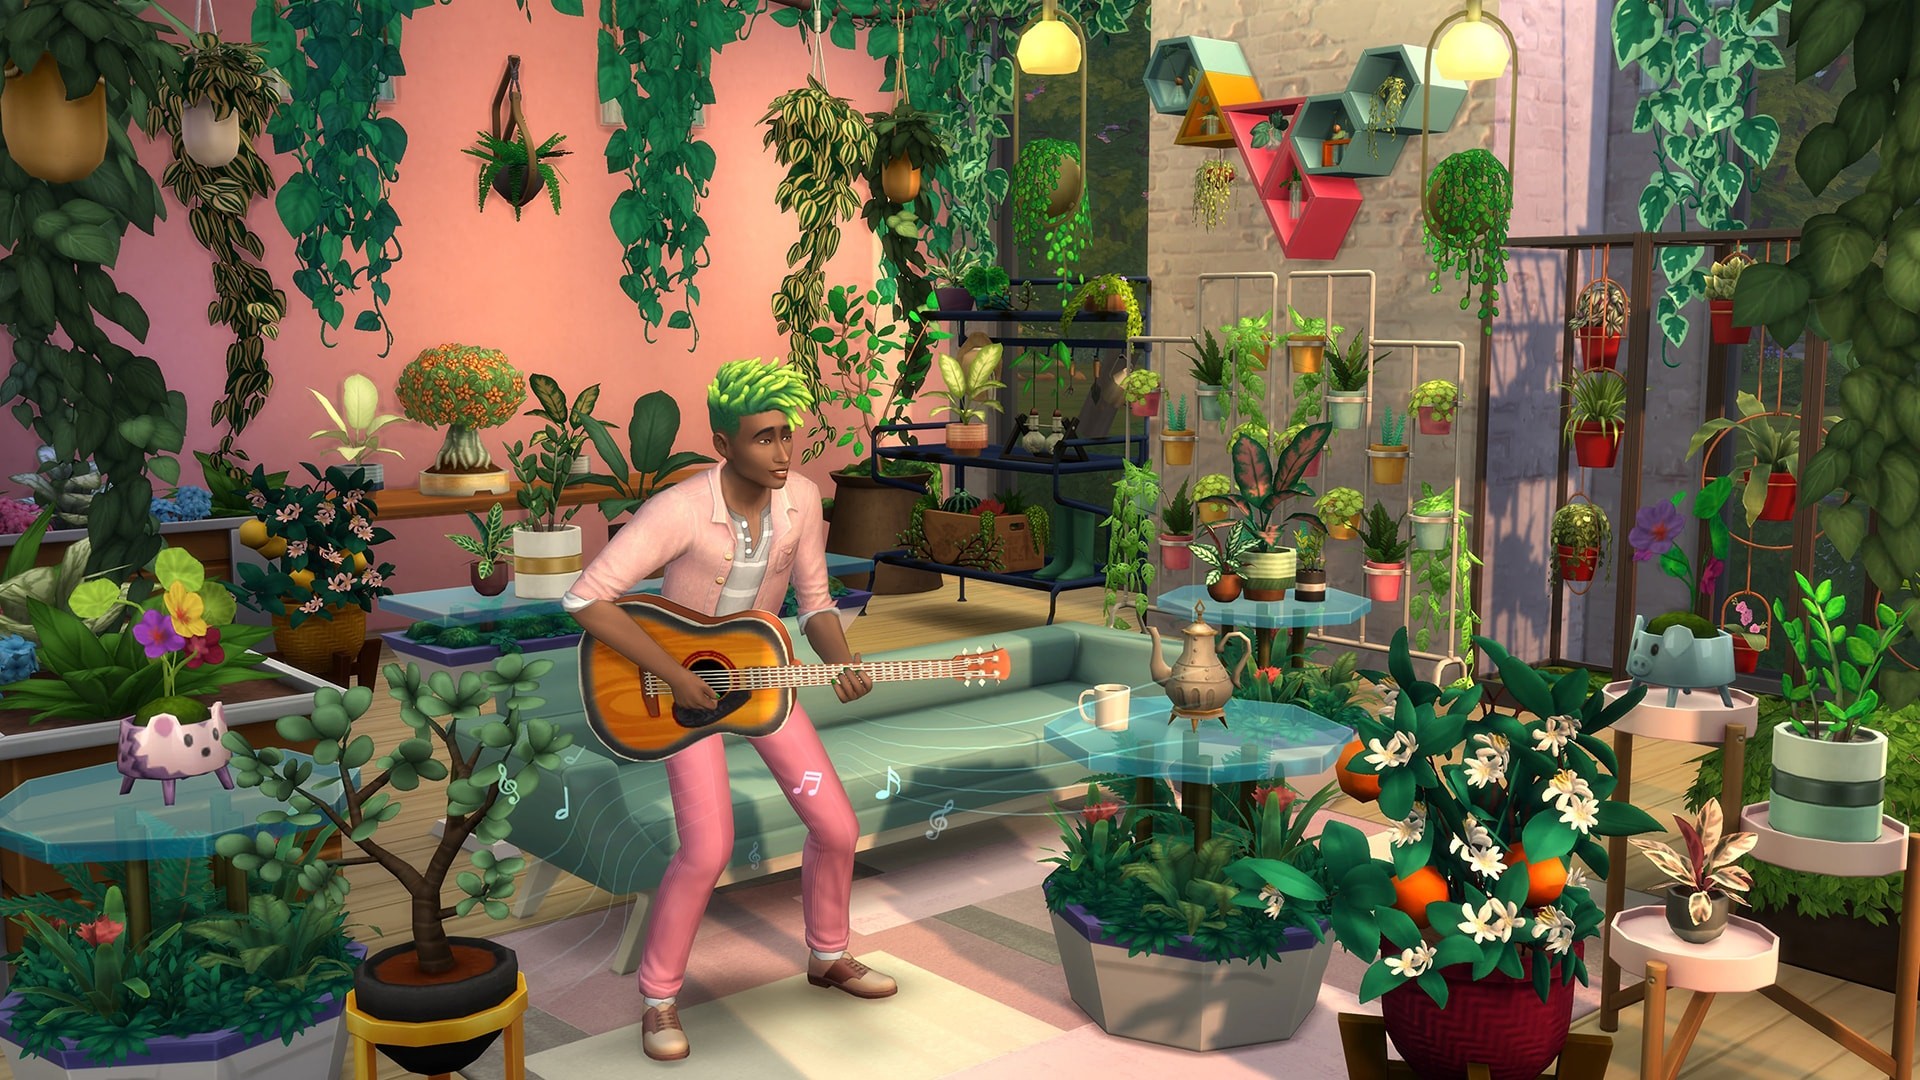 The Sims 4 - Blooming Rooms Kit DLC Origin CD Key 7.82 $